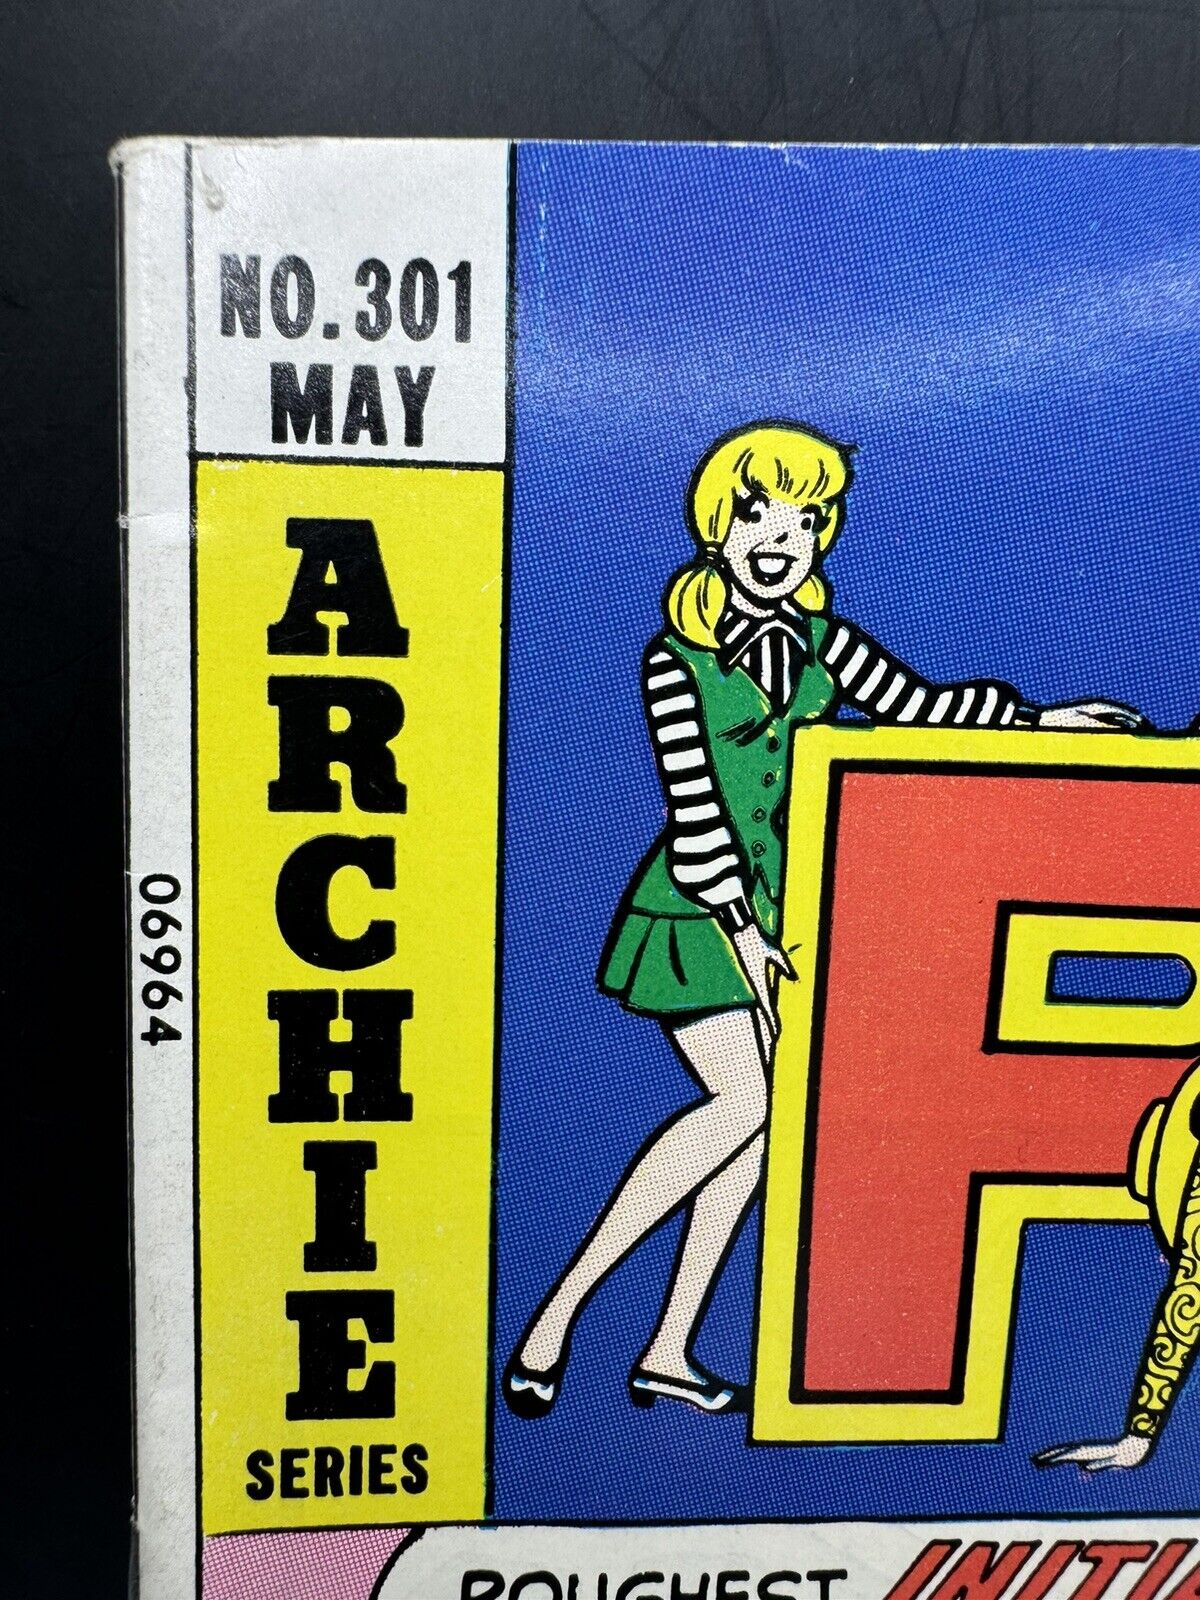 Pep Comics #301 (1975) F/VF